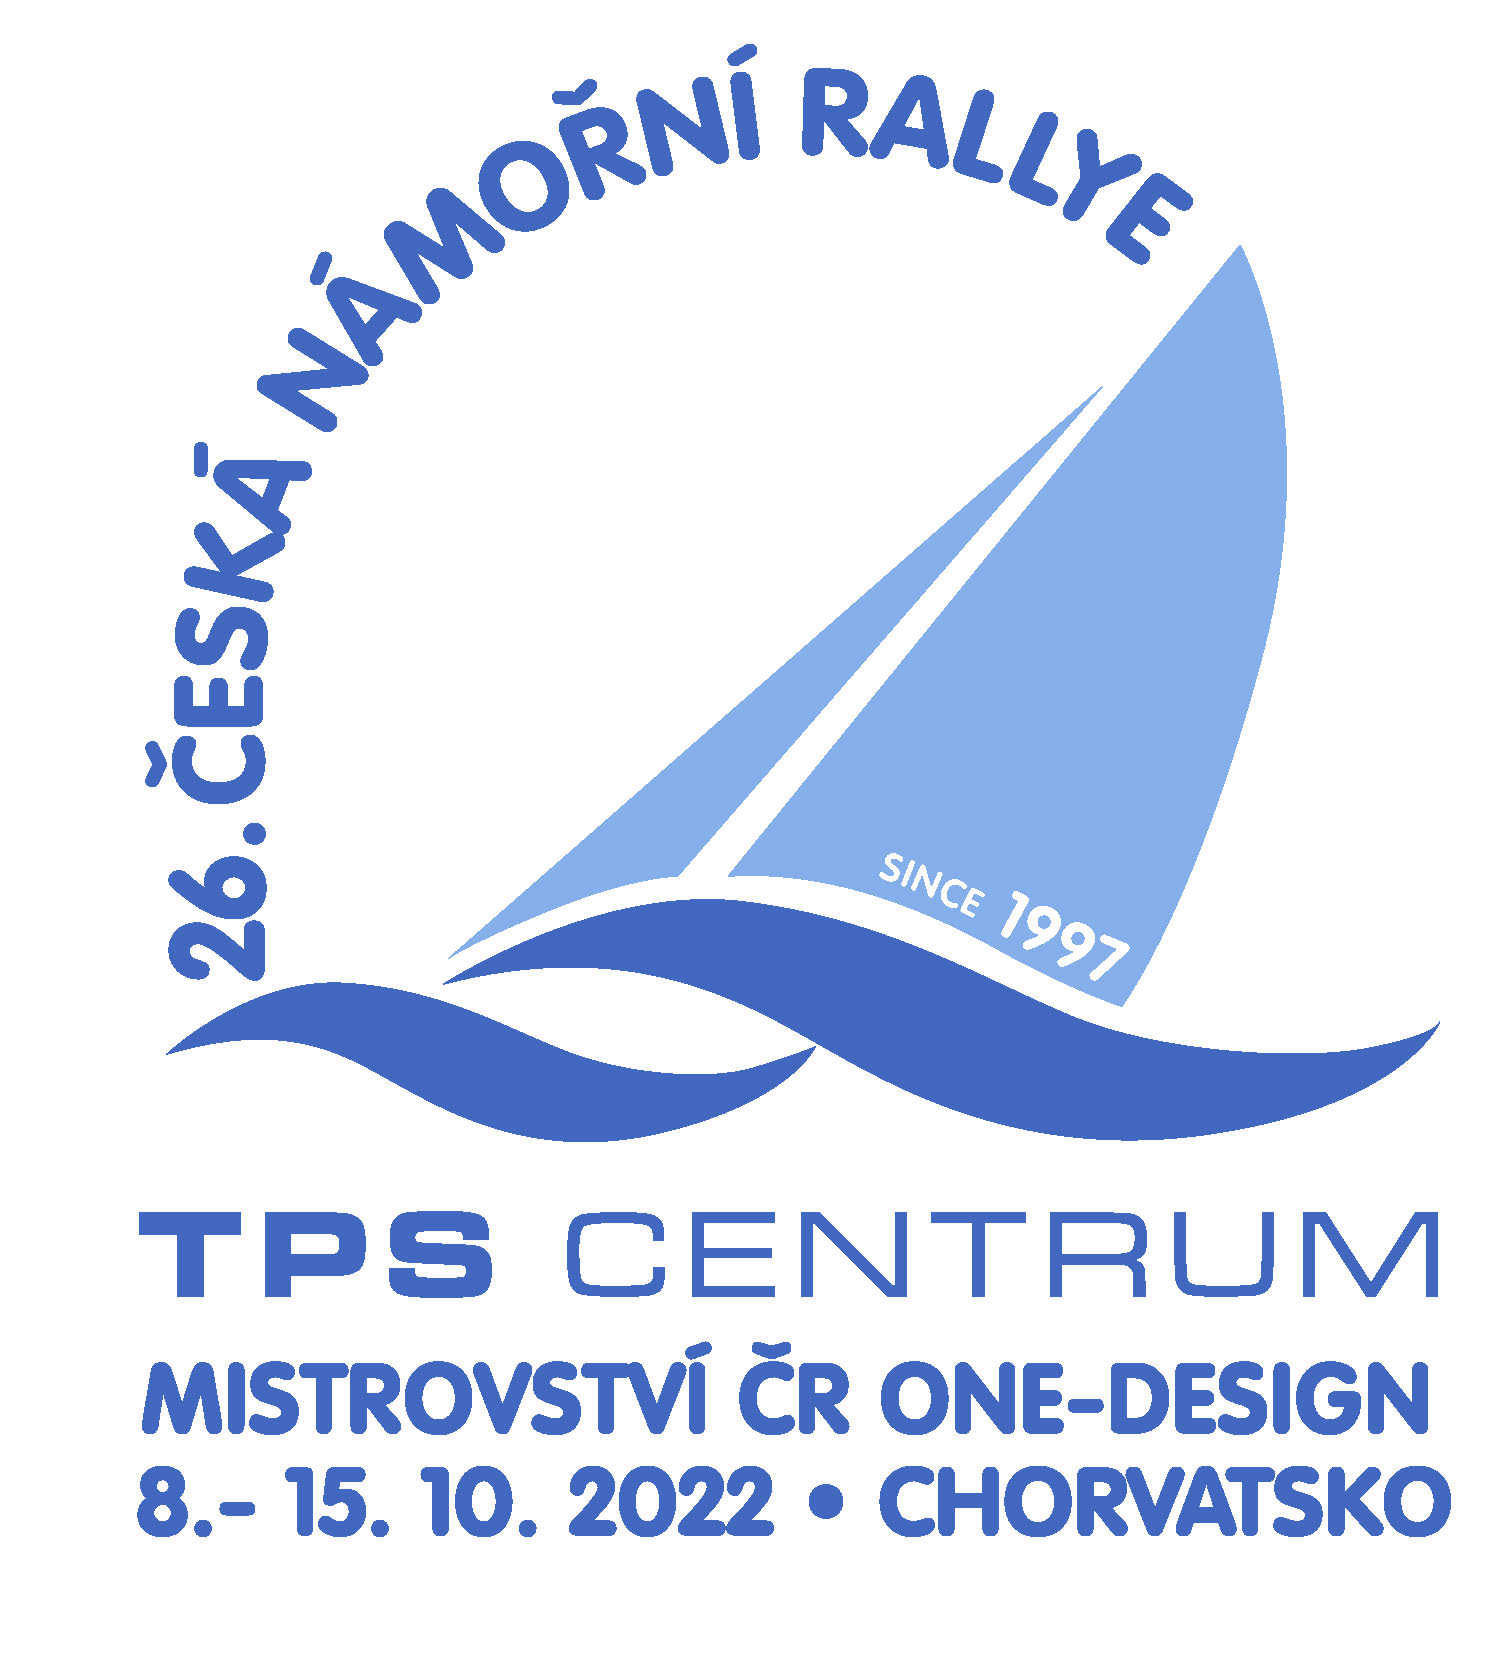 Rallye logo 2022.jpg